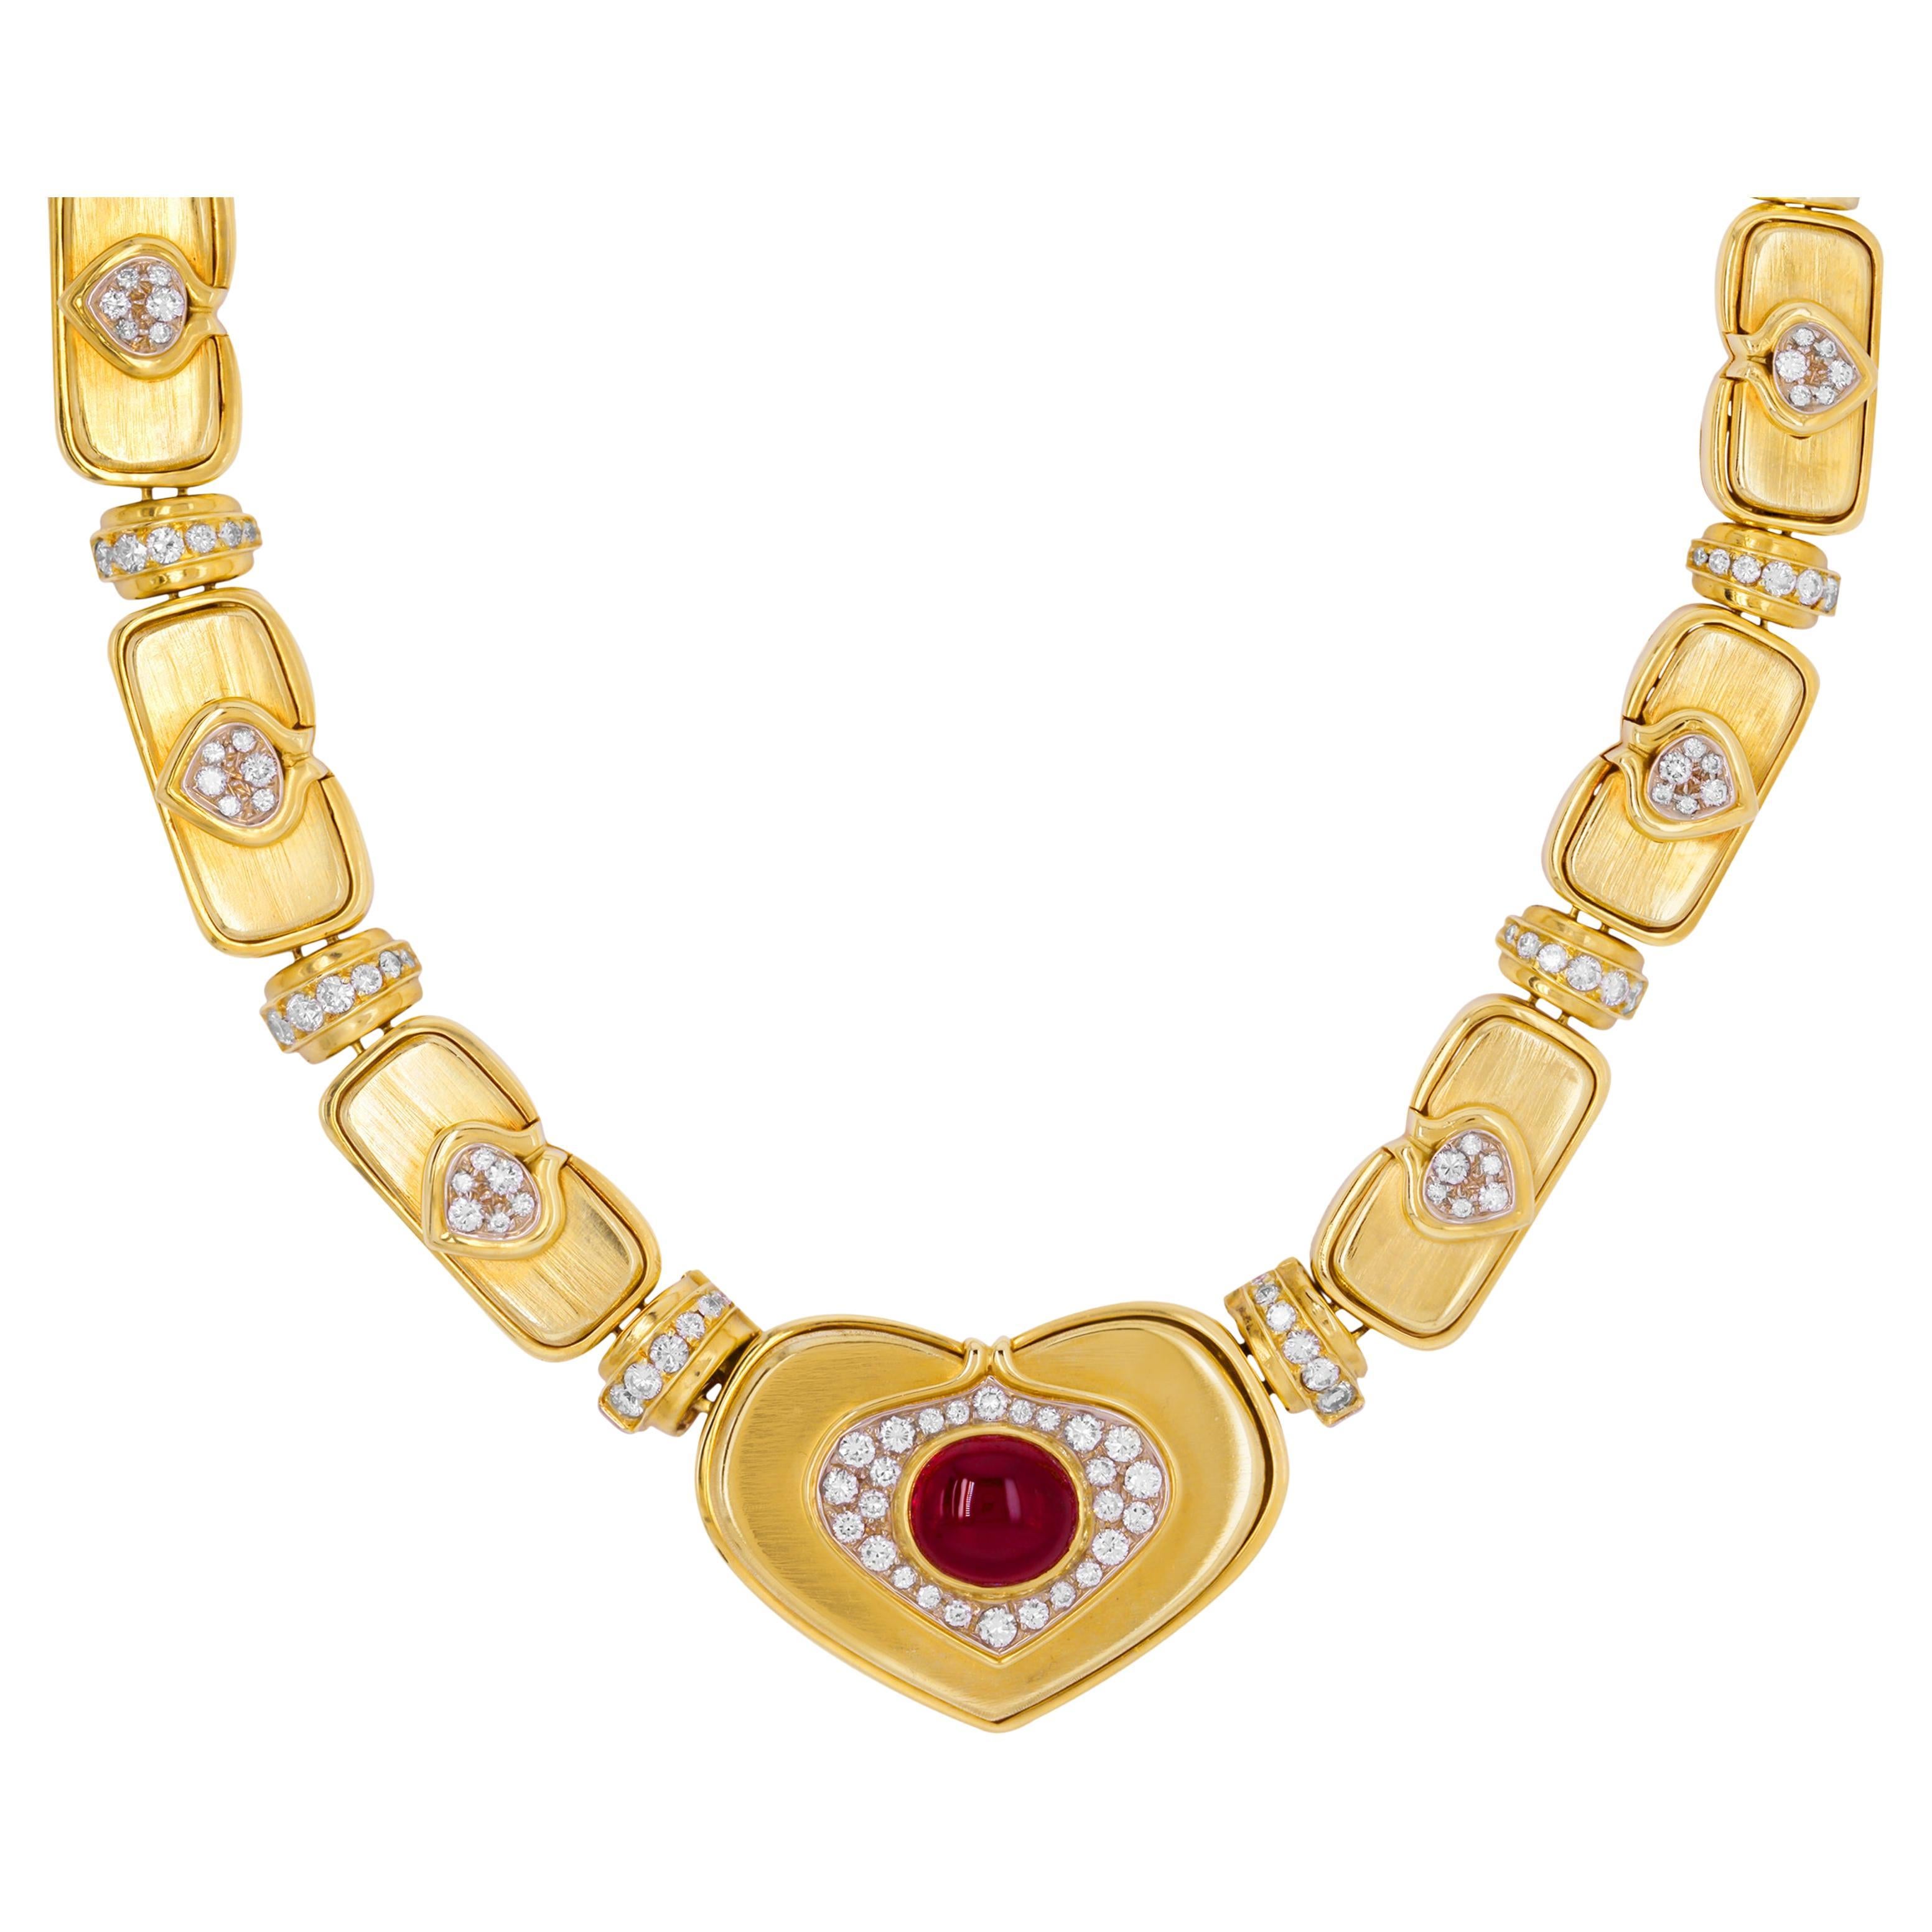 Harry Winston, collier ras du cou en or 18 carats avec pendentif cœur en diamants et cabochons de rubis de Birmanie